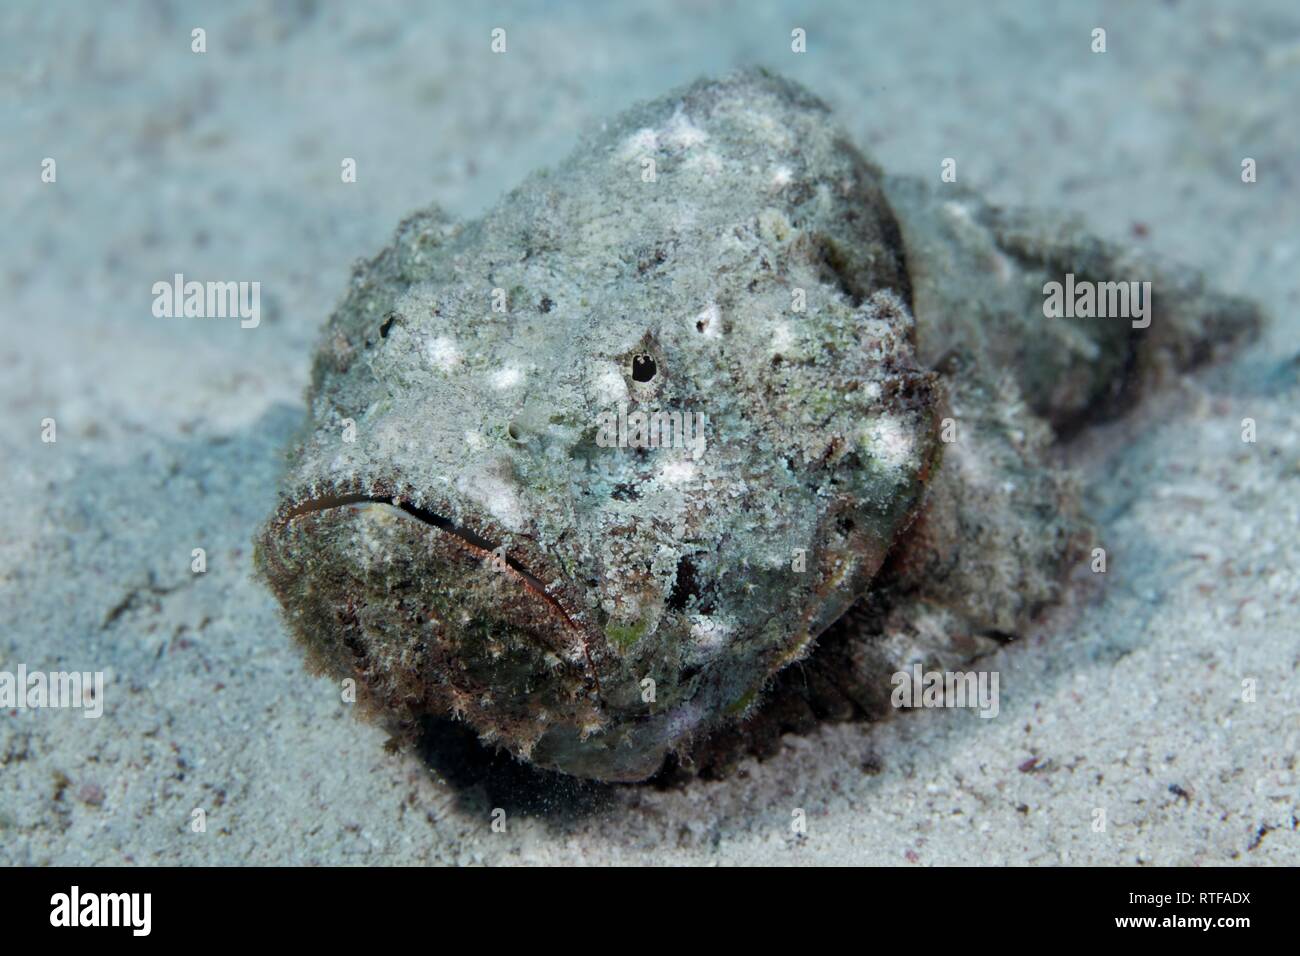 Faux poisson-pierre (Scorpaenopsis diabolus), se trouve sur le fond de sable, Mer Rouge, Egypte Banque D'Images